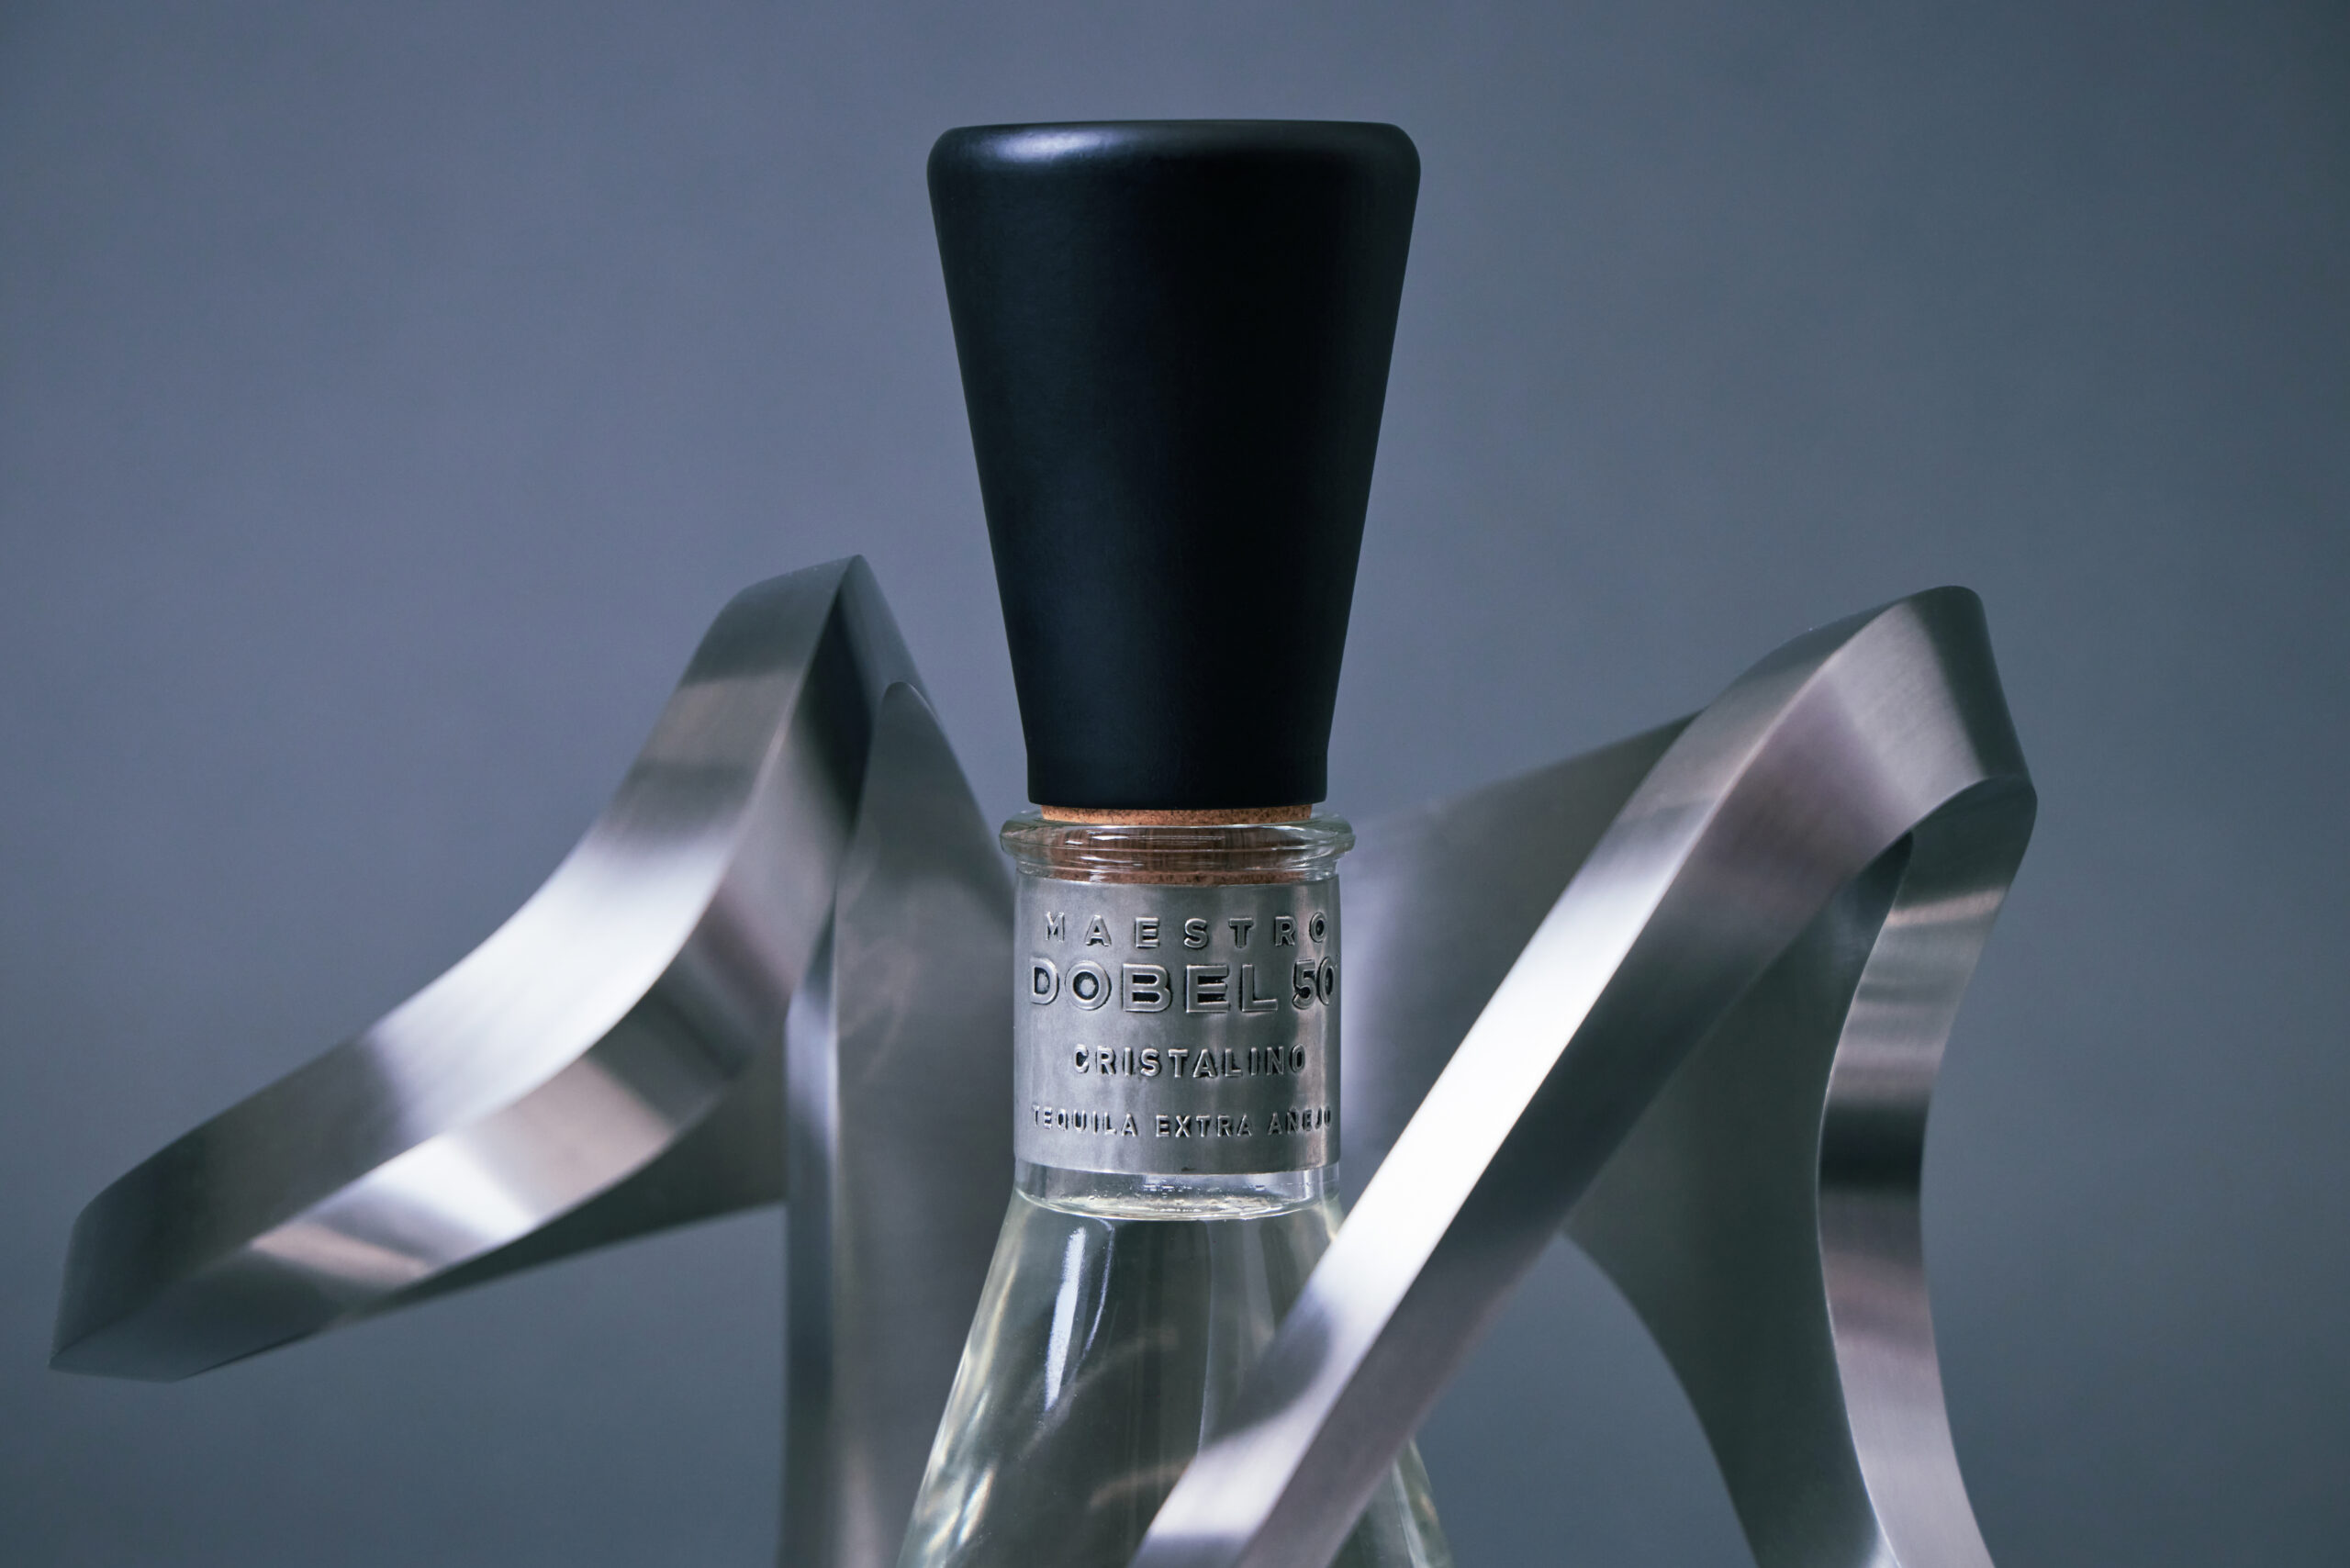 Botella de Maestro Dobel 50 Cristalino, un tequila extra añejo que representa la innovación en el siguiente nivel en cristalino. El mejor regalo para celebrar.